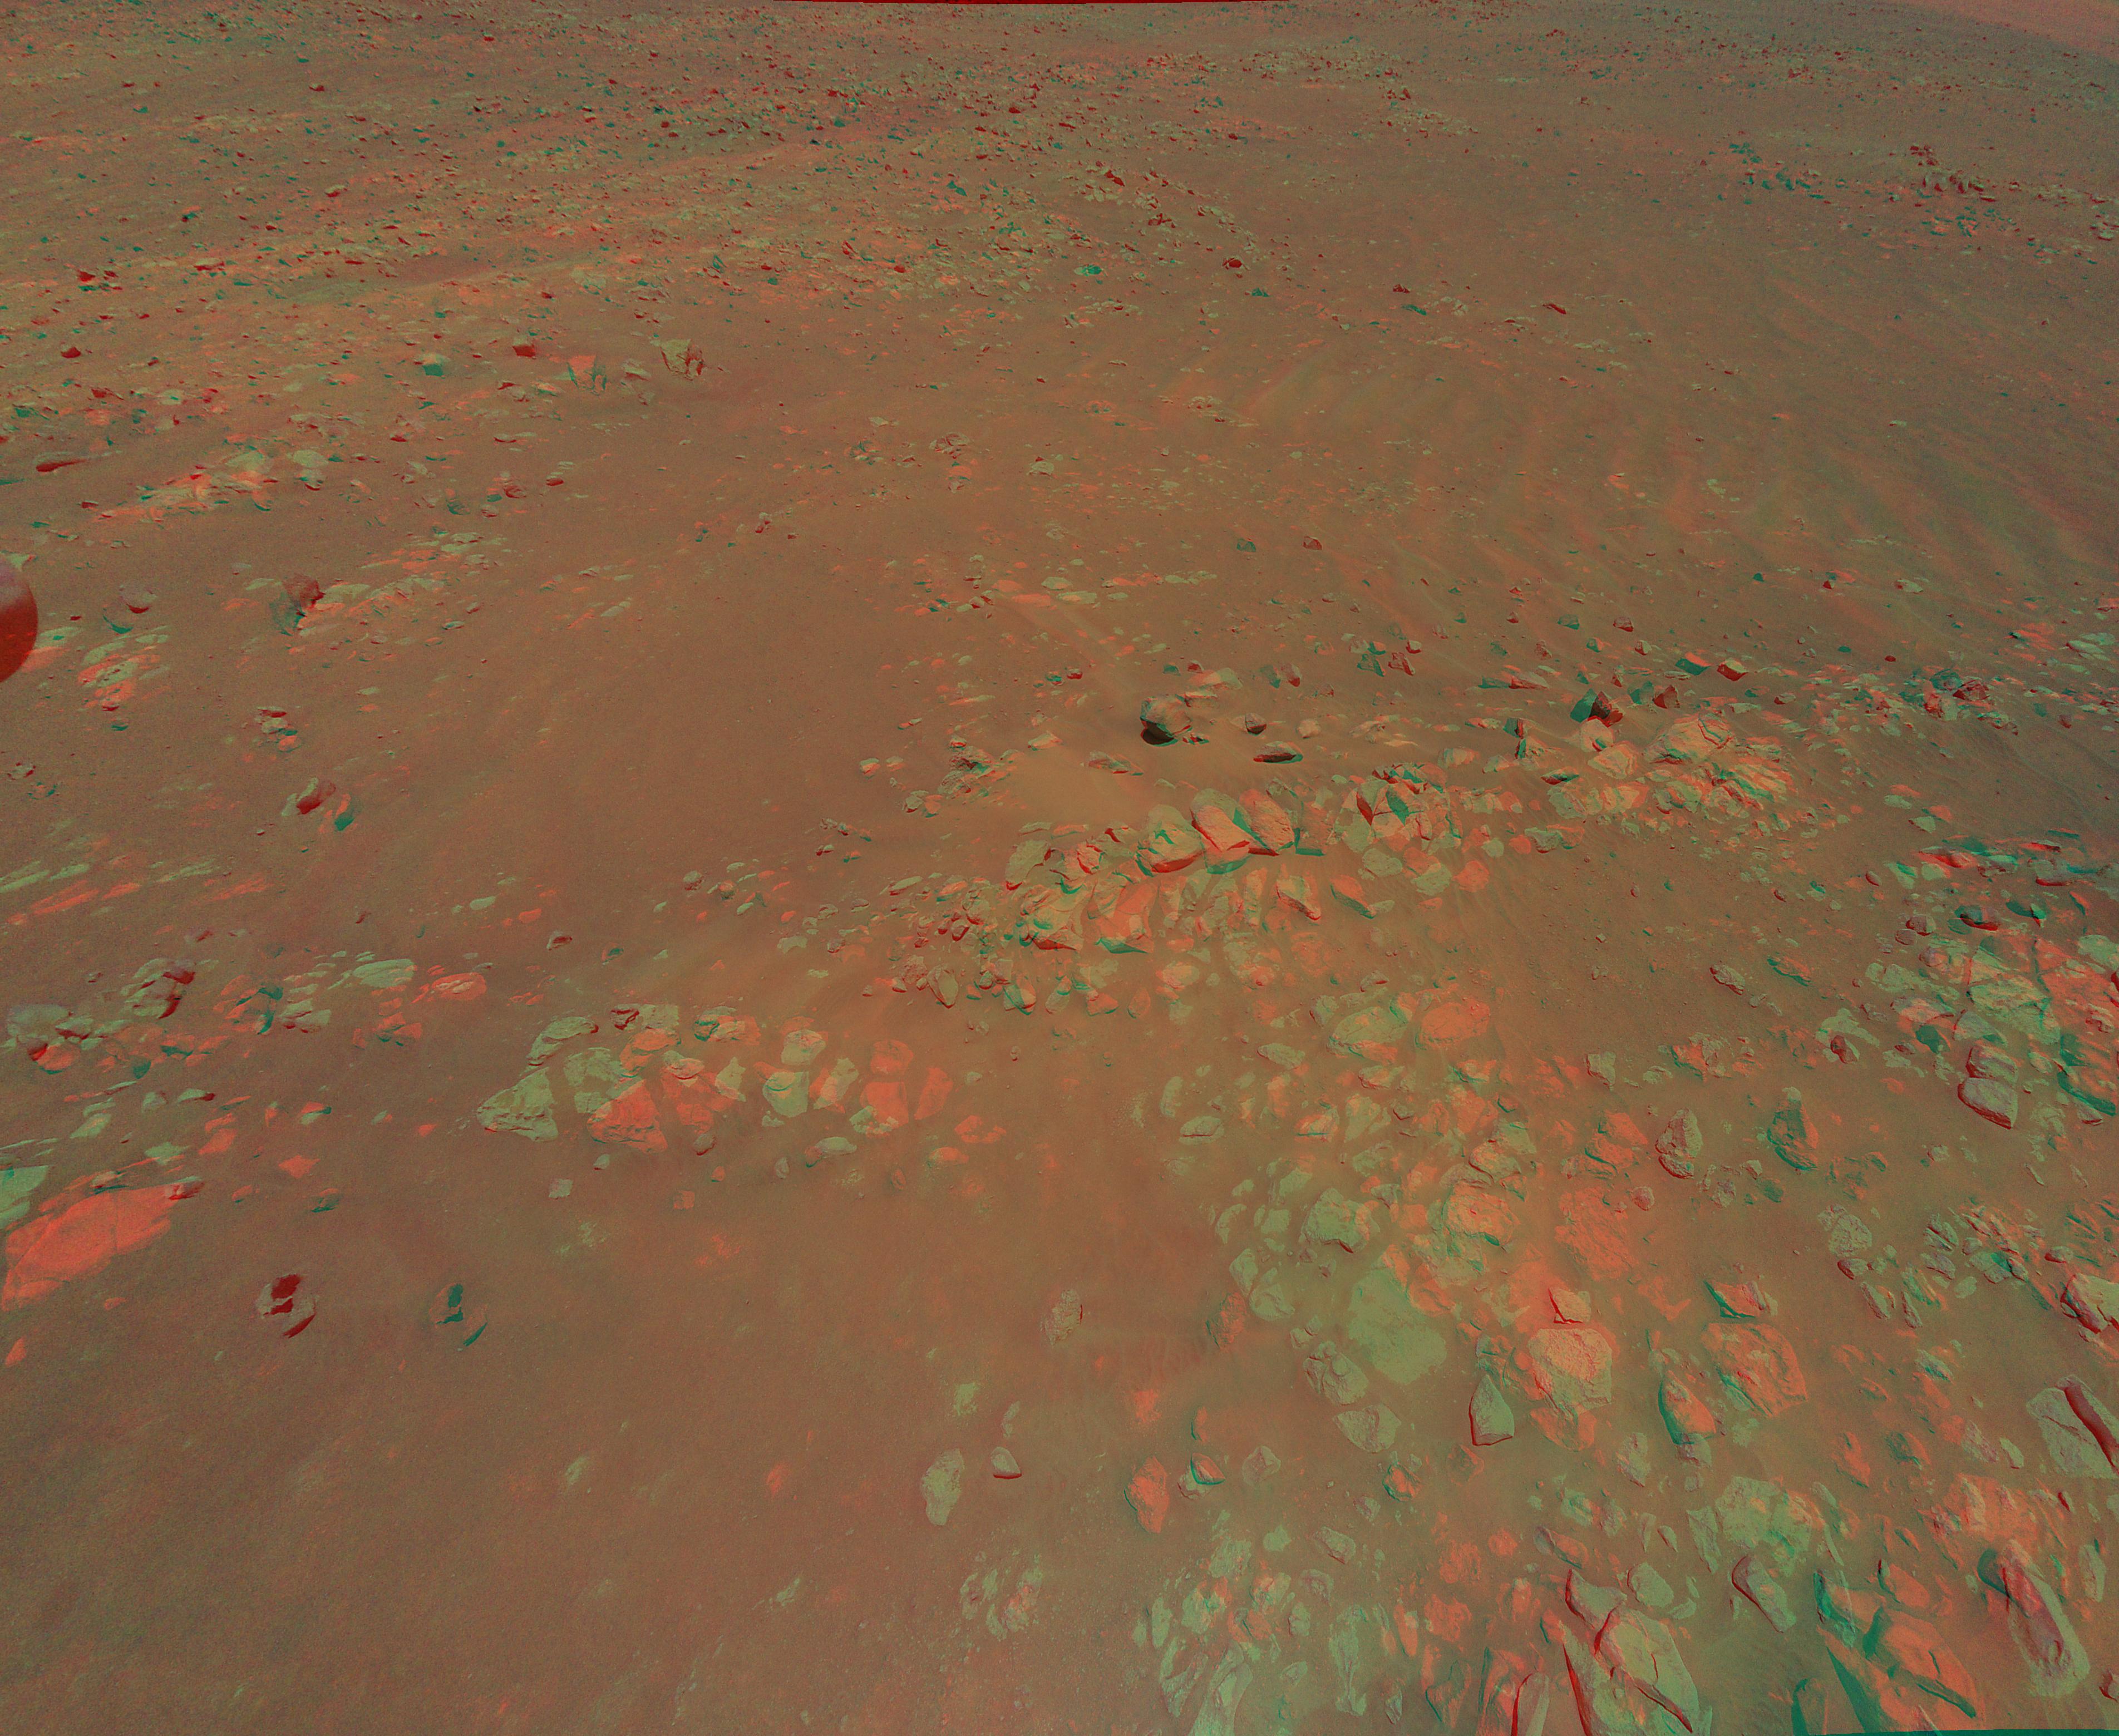 PIA24688: Jezero Crater's Raised Ridges in 3D